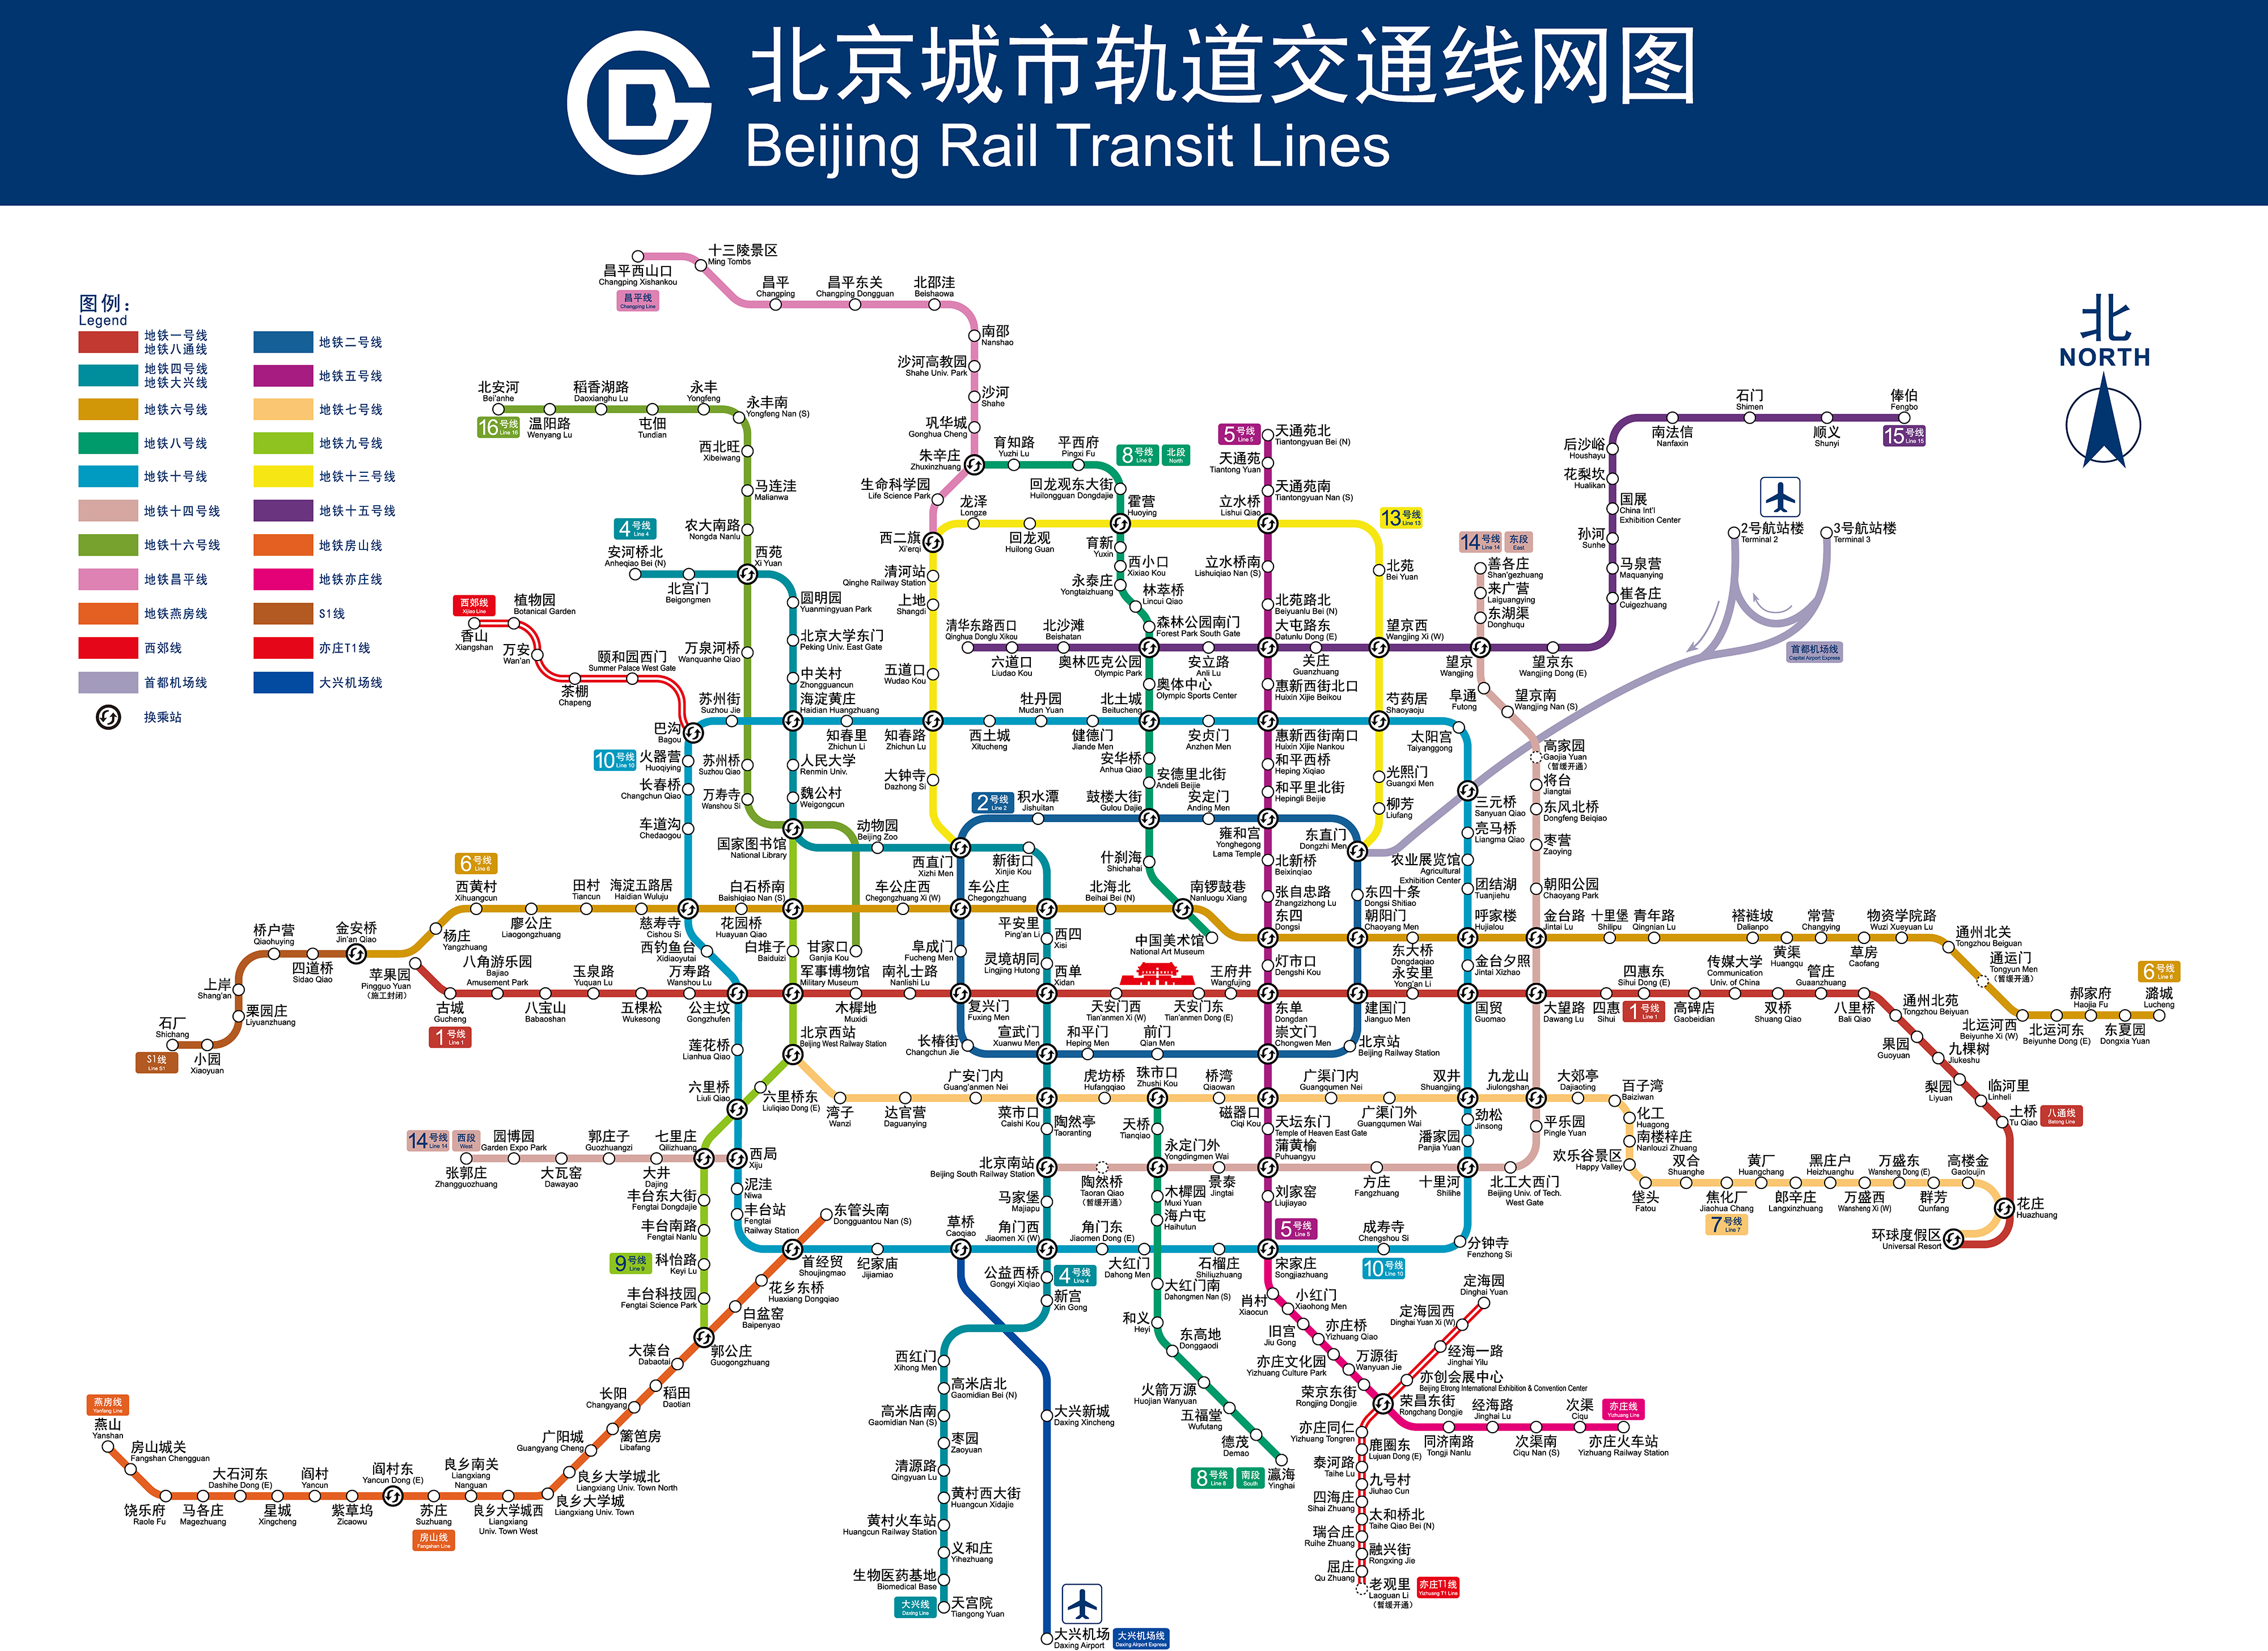 【北京地铁科普向】现有线路与规划线路简单介绍(2021